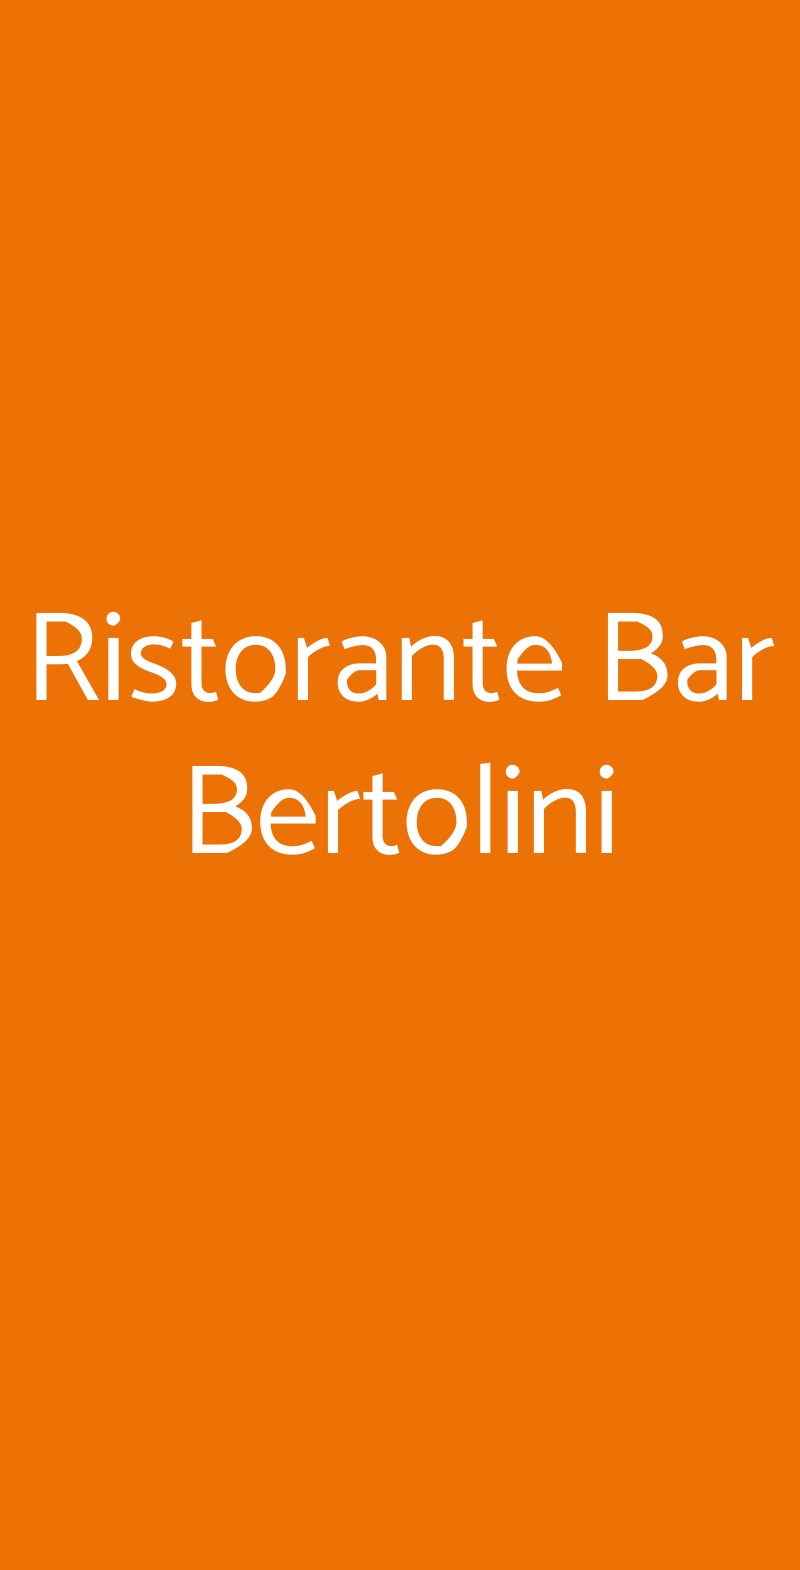 Ristorante Bar Bertolini Piazza al Serchio menù 1 pagina